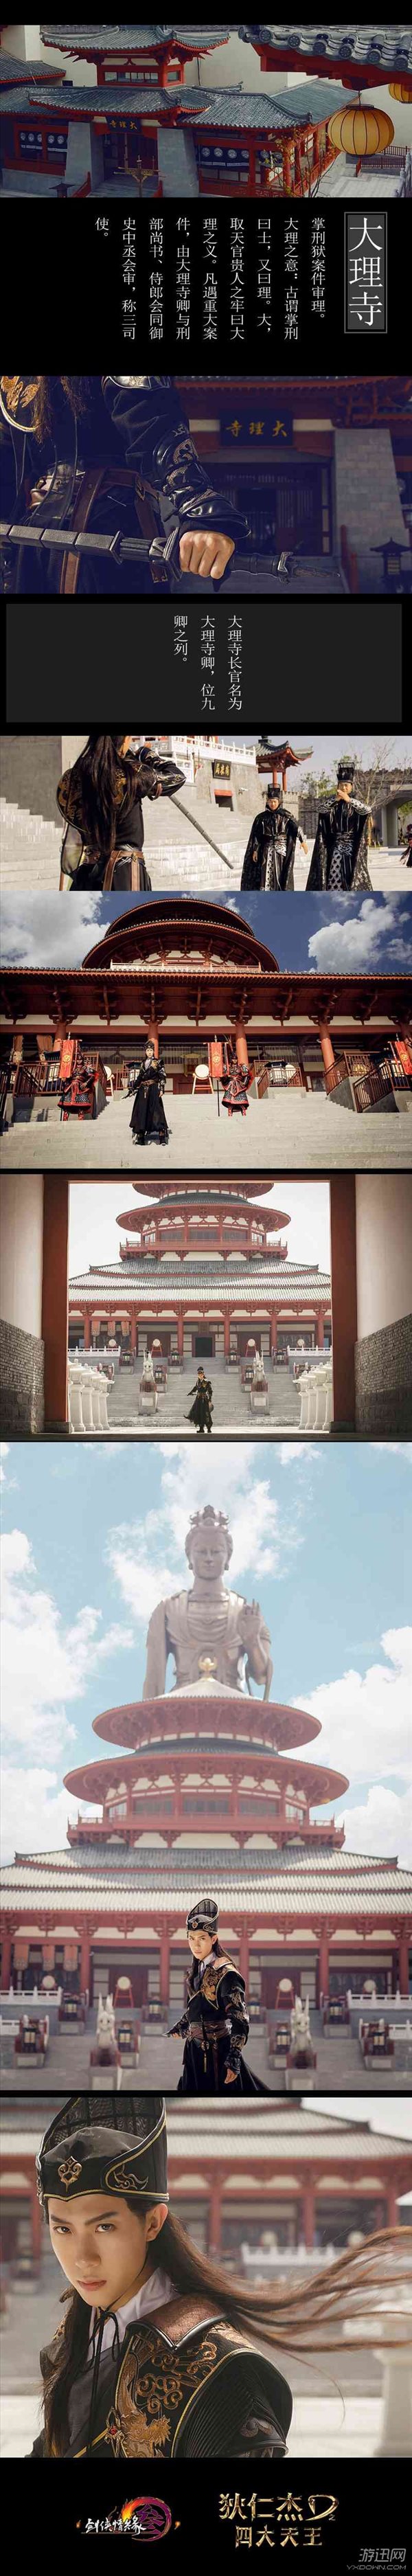 《剑网3》狄仁杰主题礼盒上线 COS演绎皇家风范